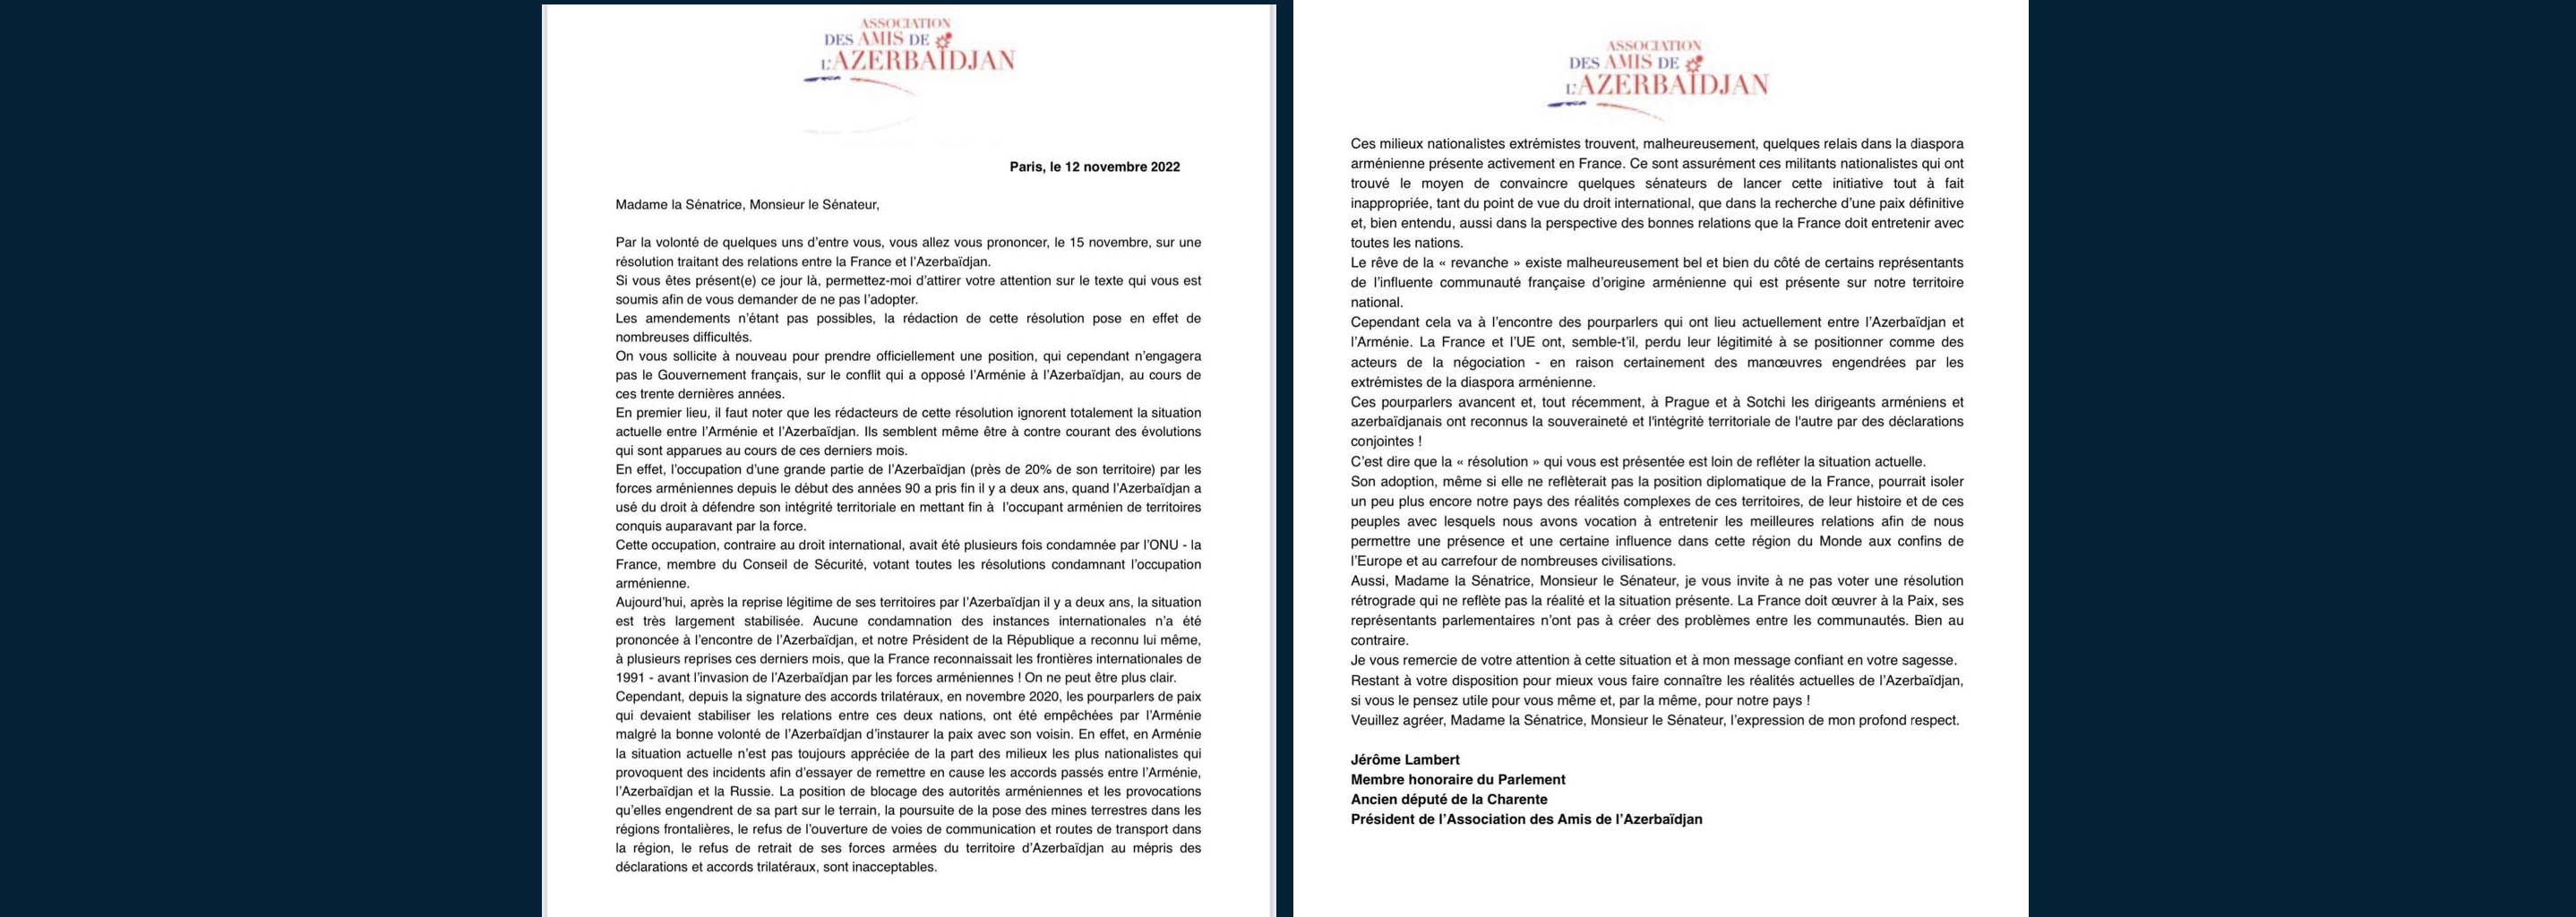 Президент Accоциации друзей Азербайджана призвал французских сенаторов не голосовать за пресловутую резолюцию